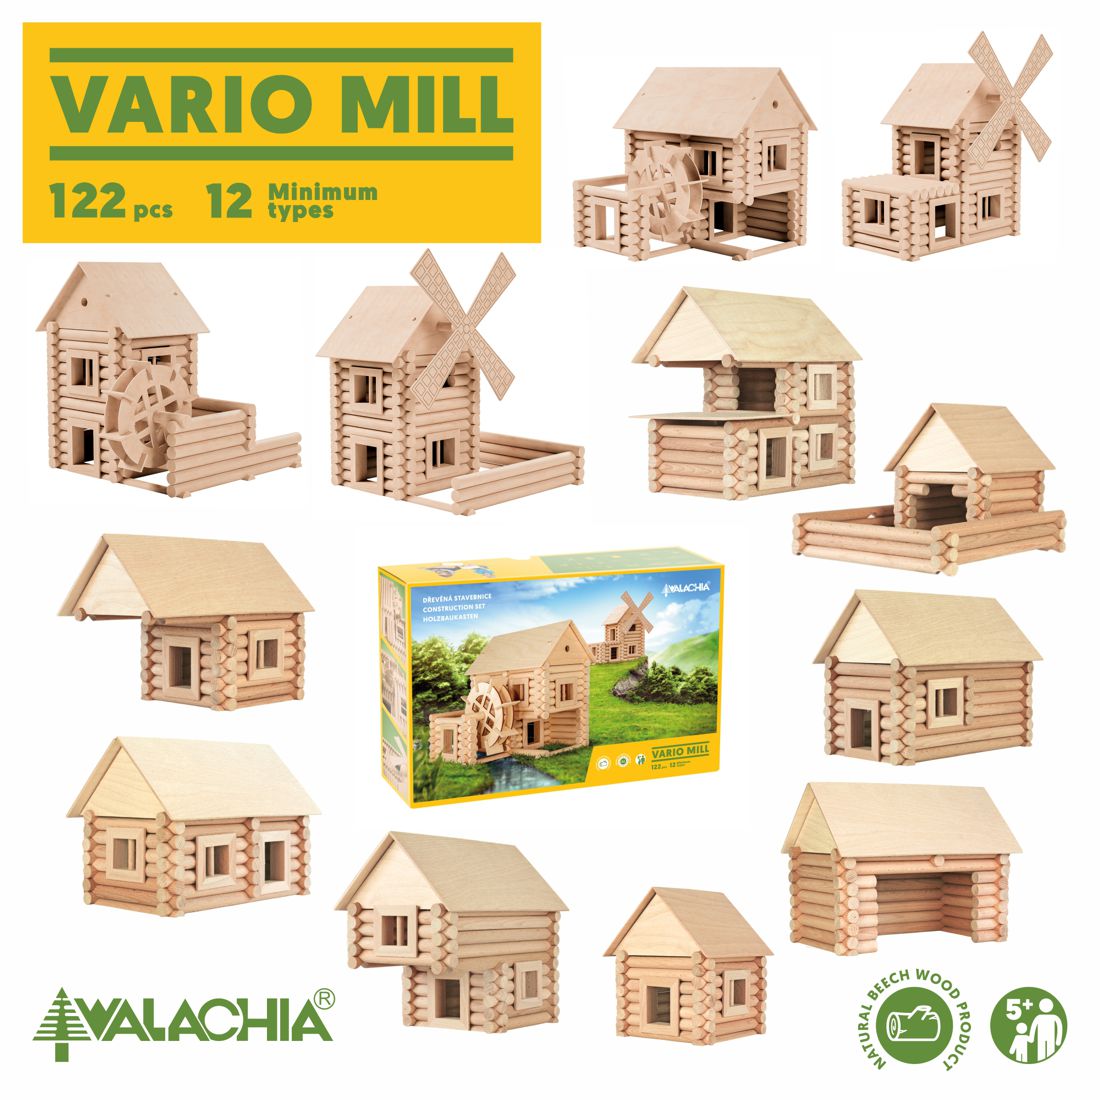 Vario Mill